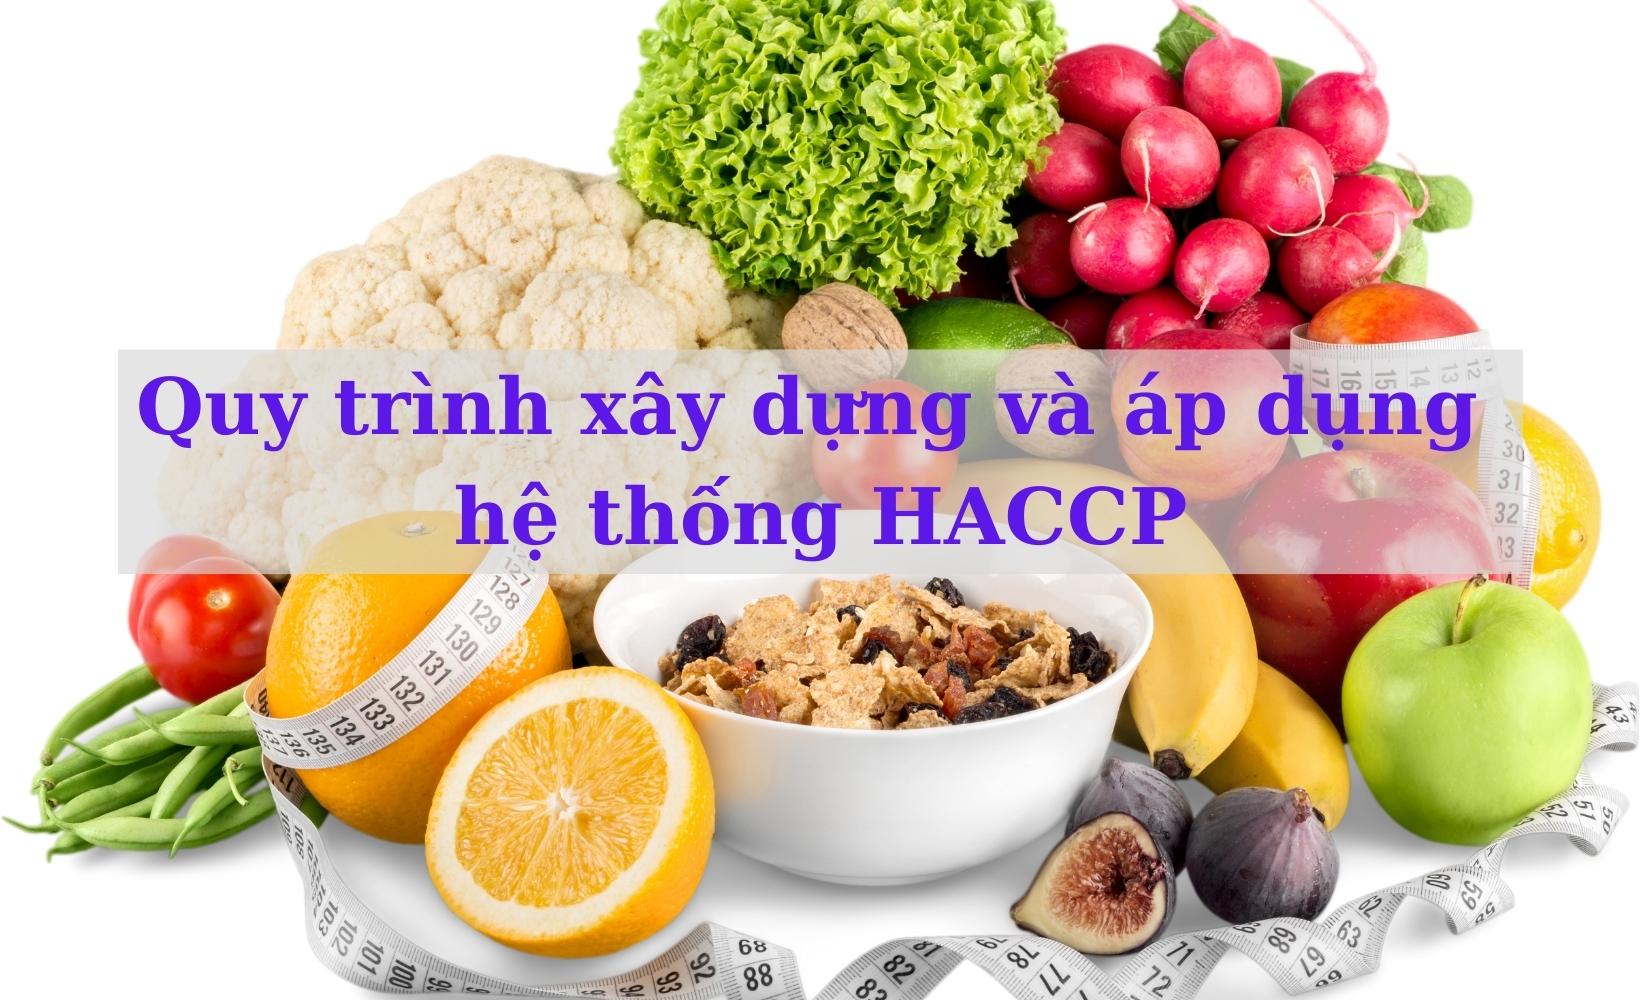 Quy trình xây dựng và áp dụng hệ thống HACCP